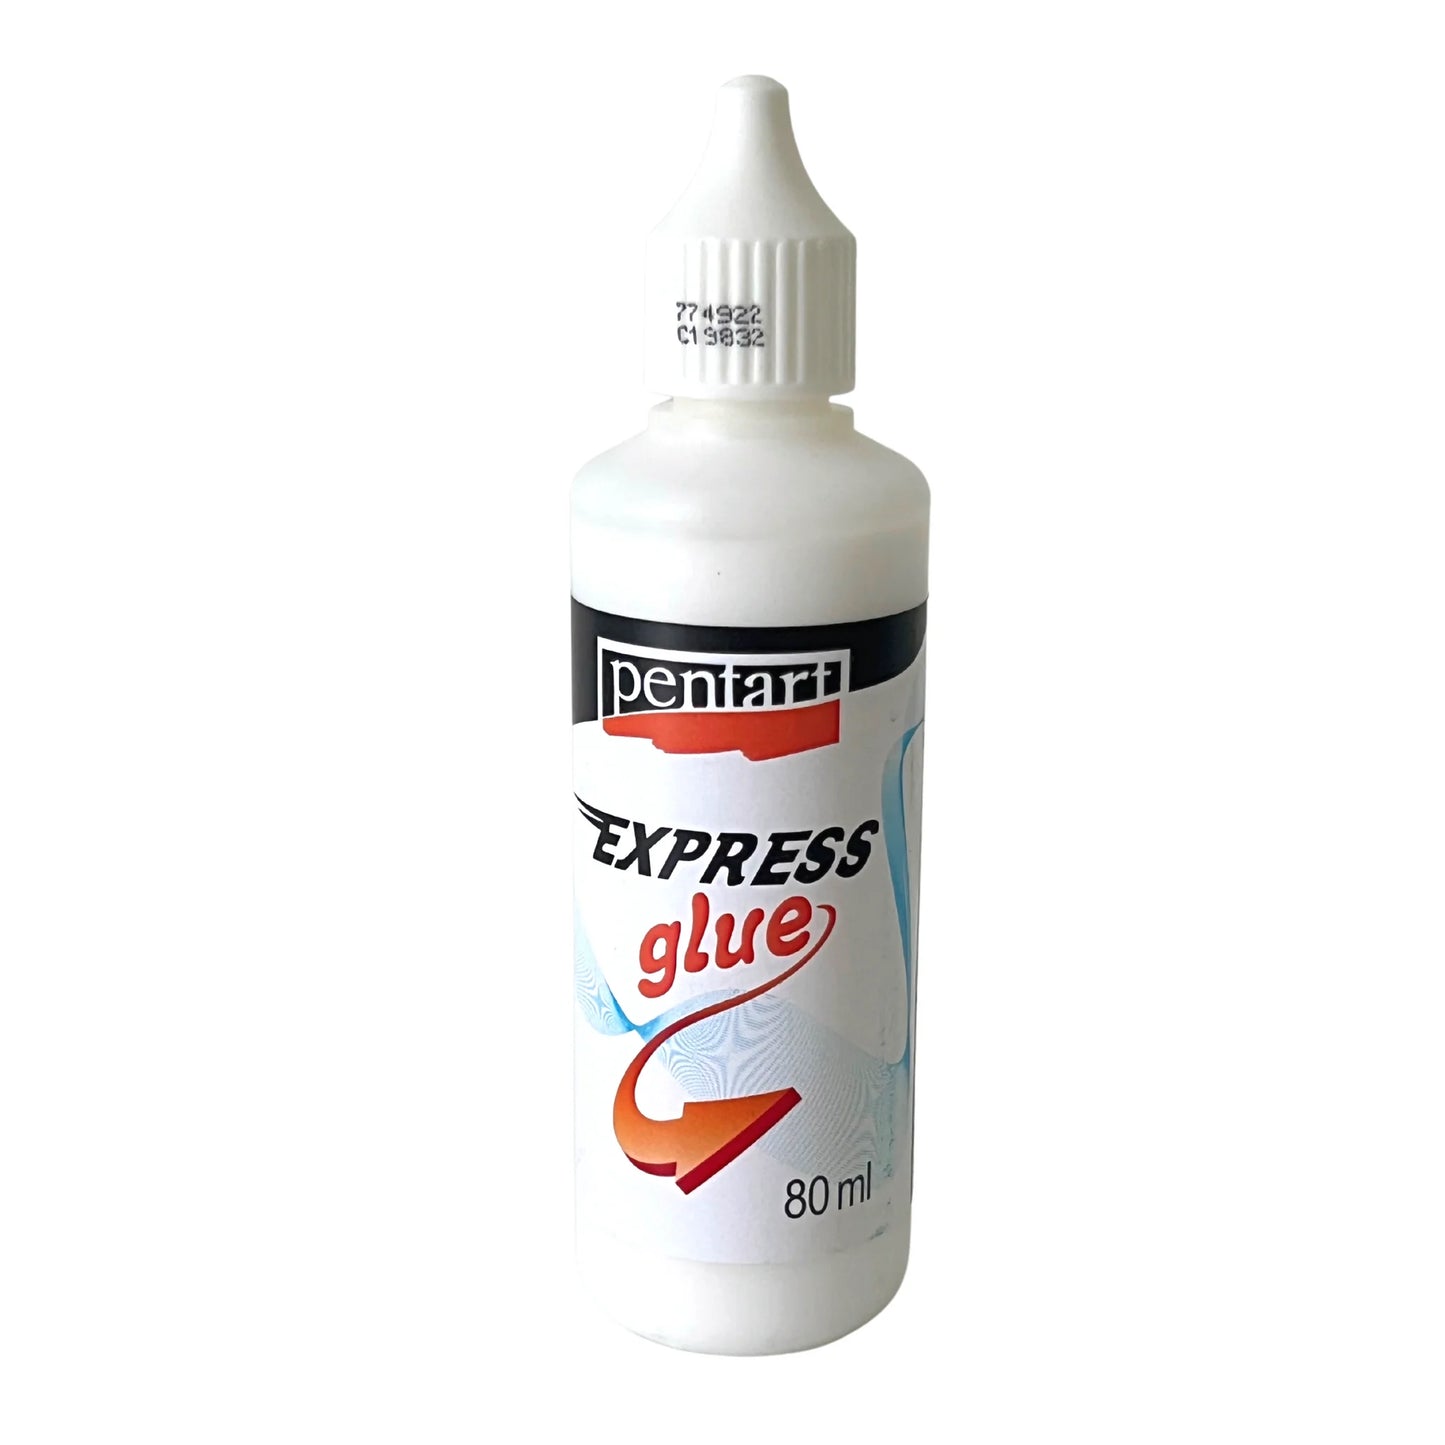 Pentart Express glue